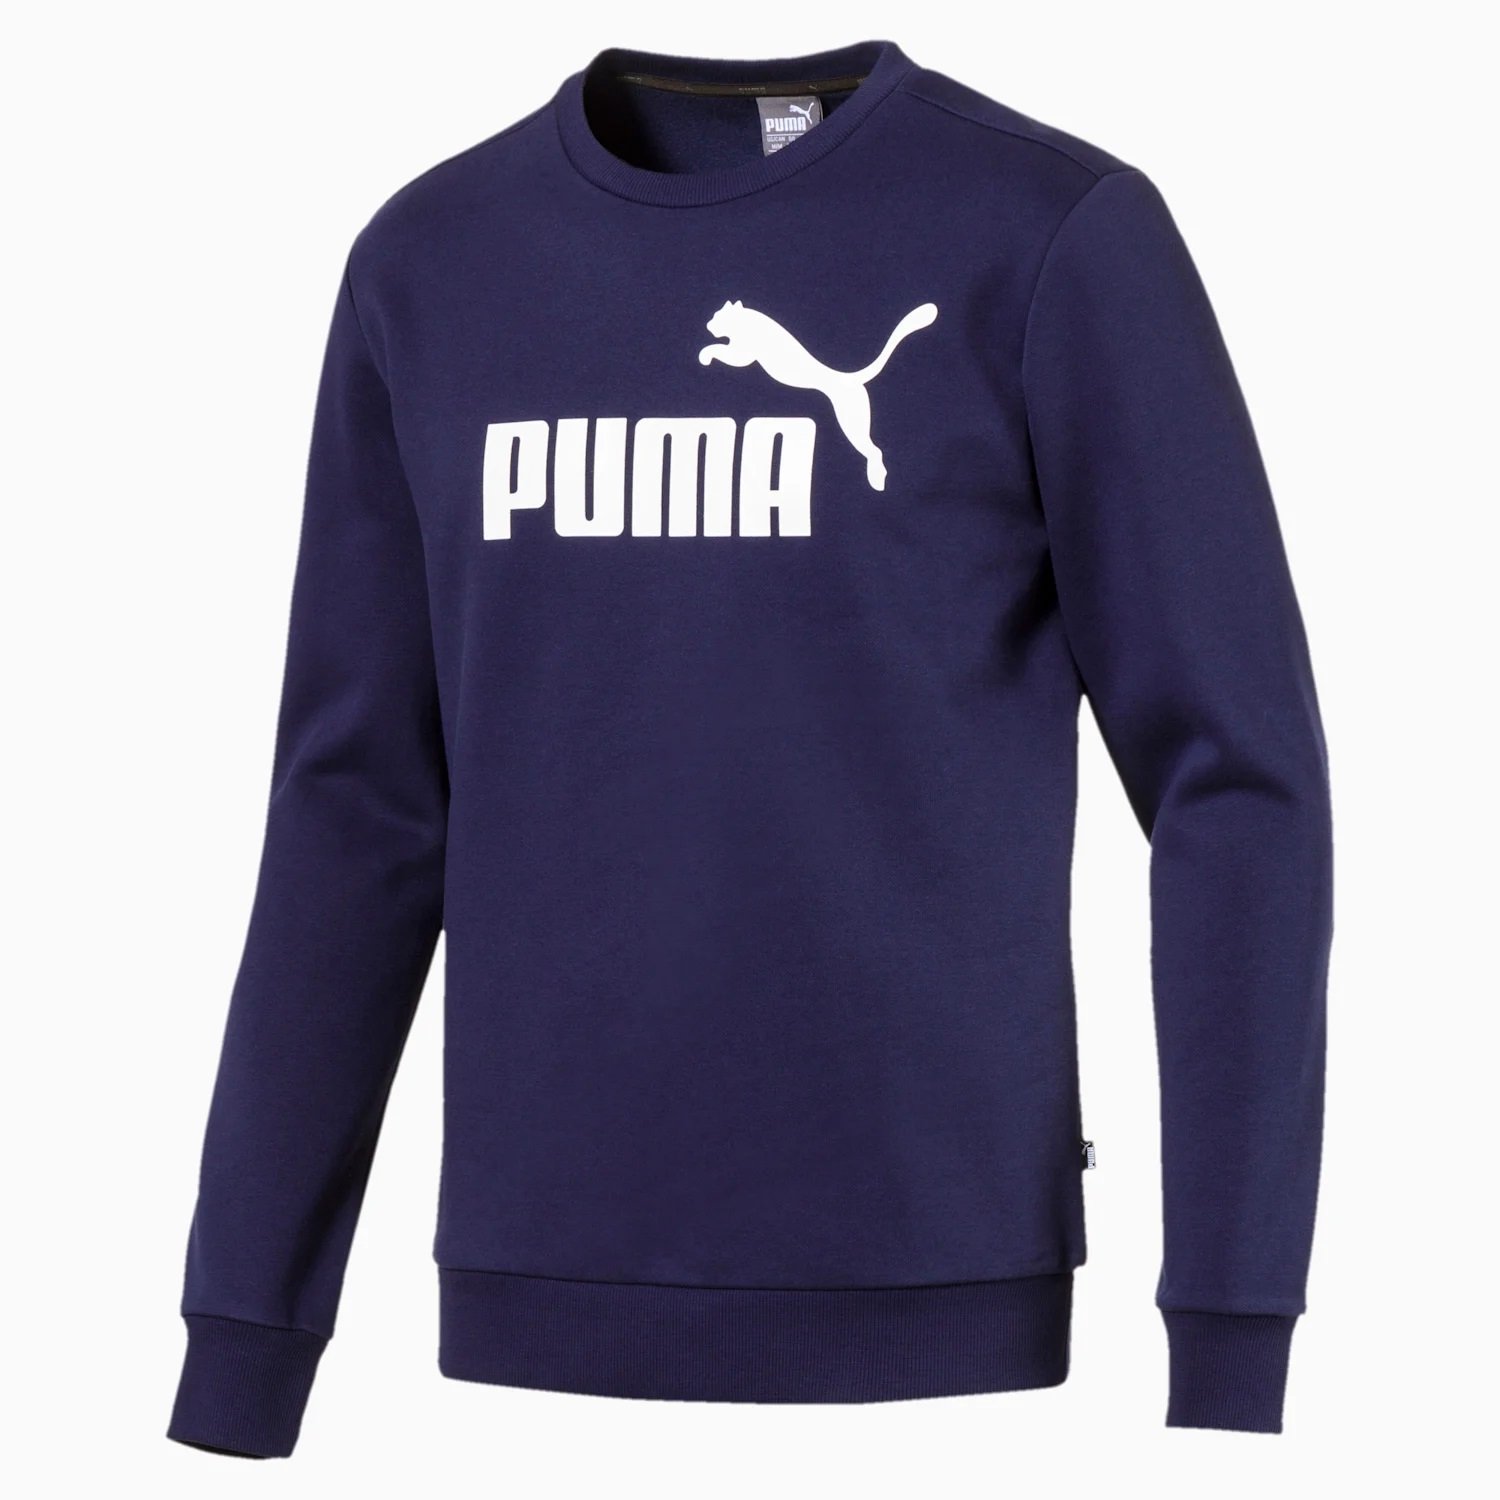 Puma - Essentlals Fleece - Navy | Sport - | 851747-06 supplier of Granatowy Crew - sports Kicks Sweat footwear Sweatshirt a trusted branded